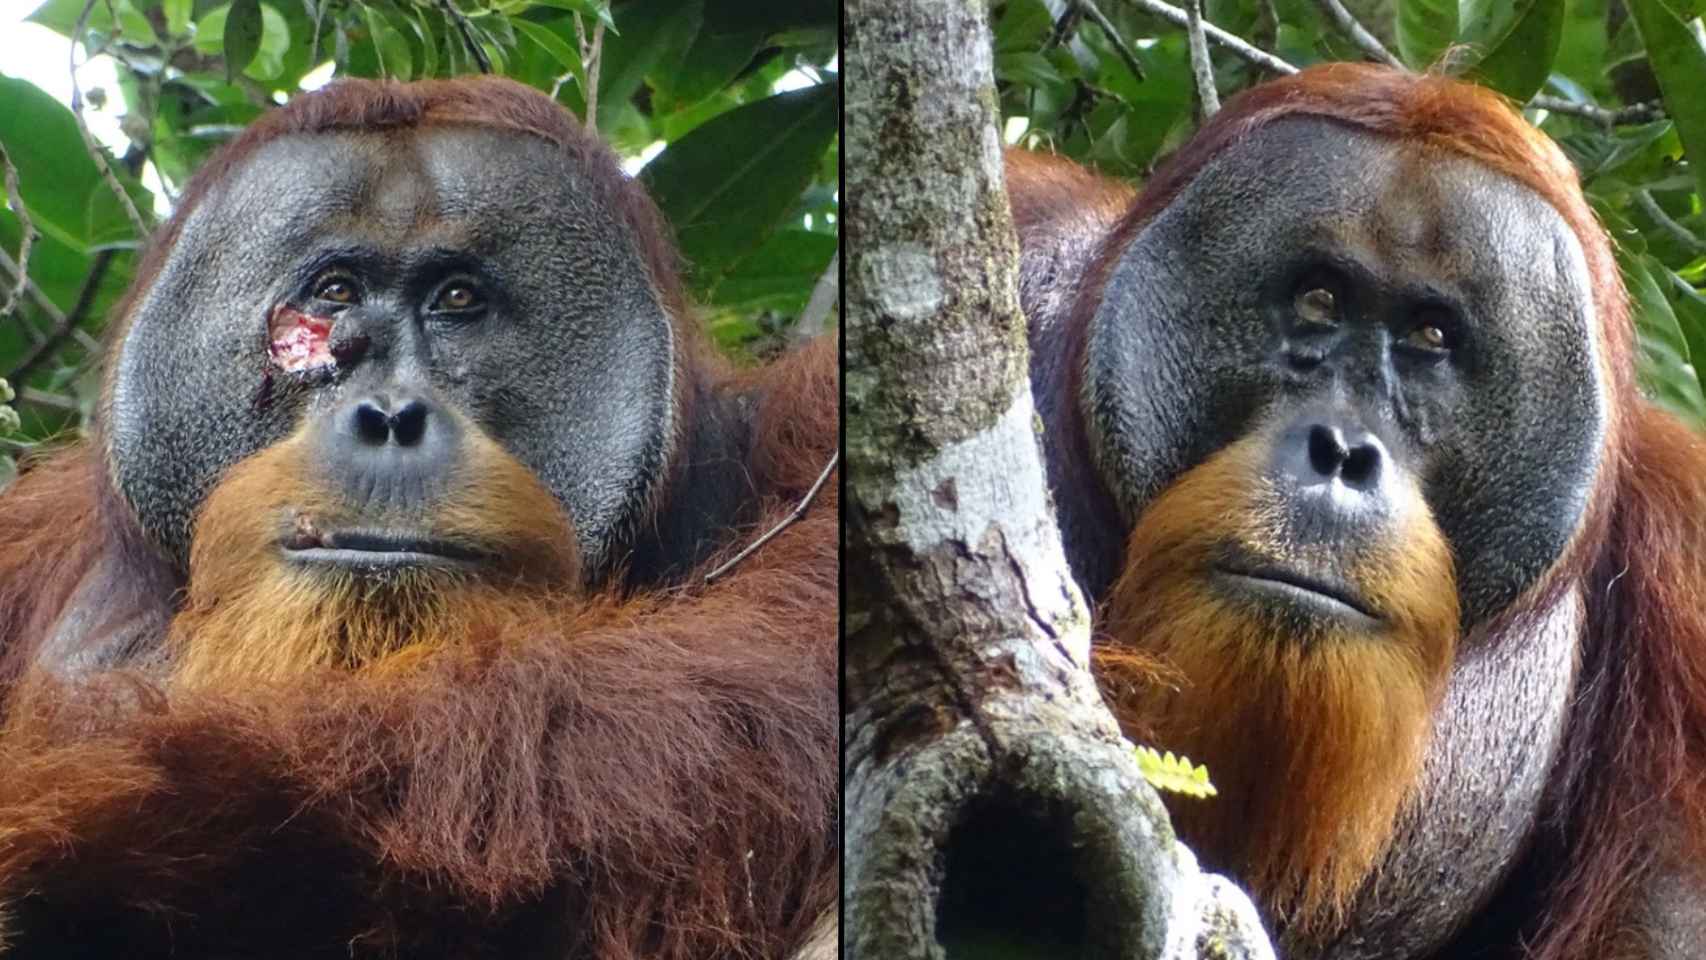 Captan por primera vez a un orangután elaborando medicina y curándose con éxito una herida en la cara